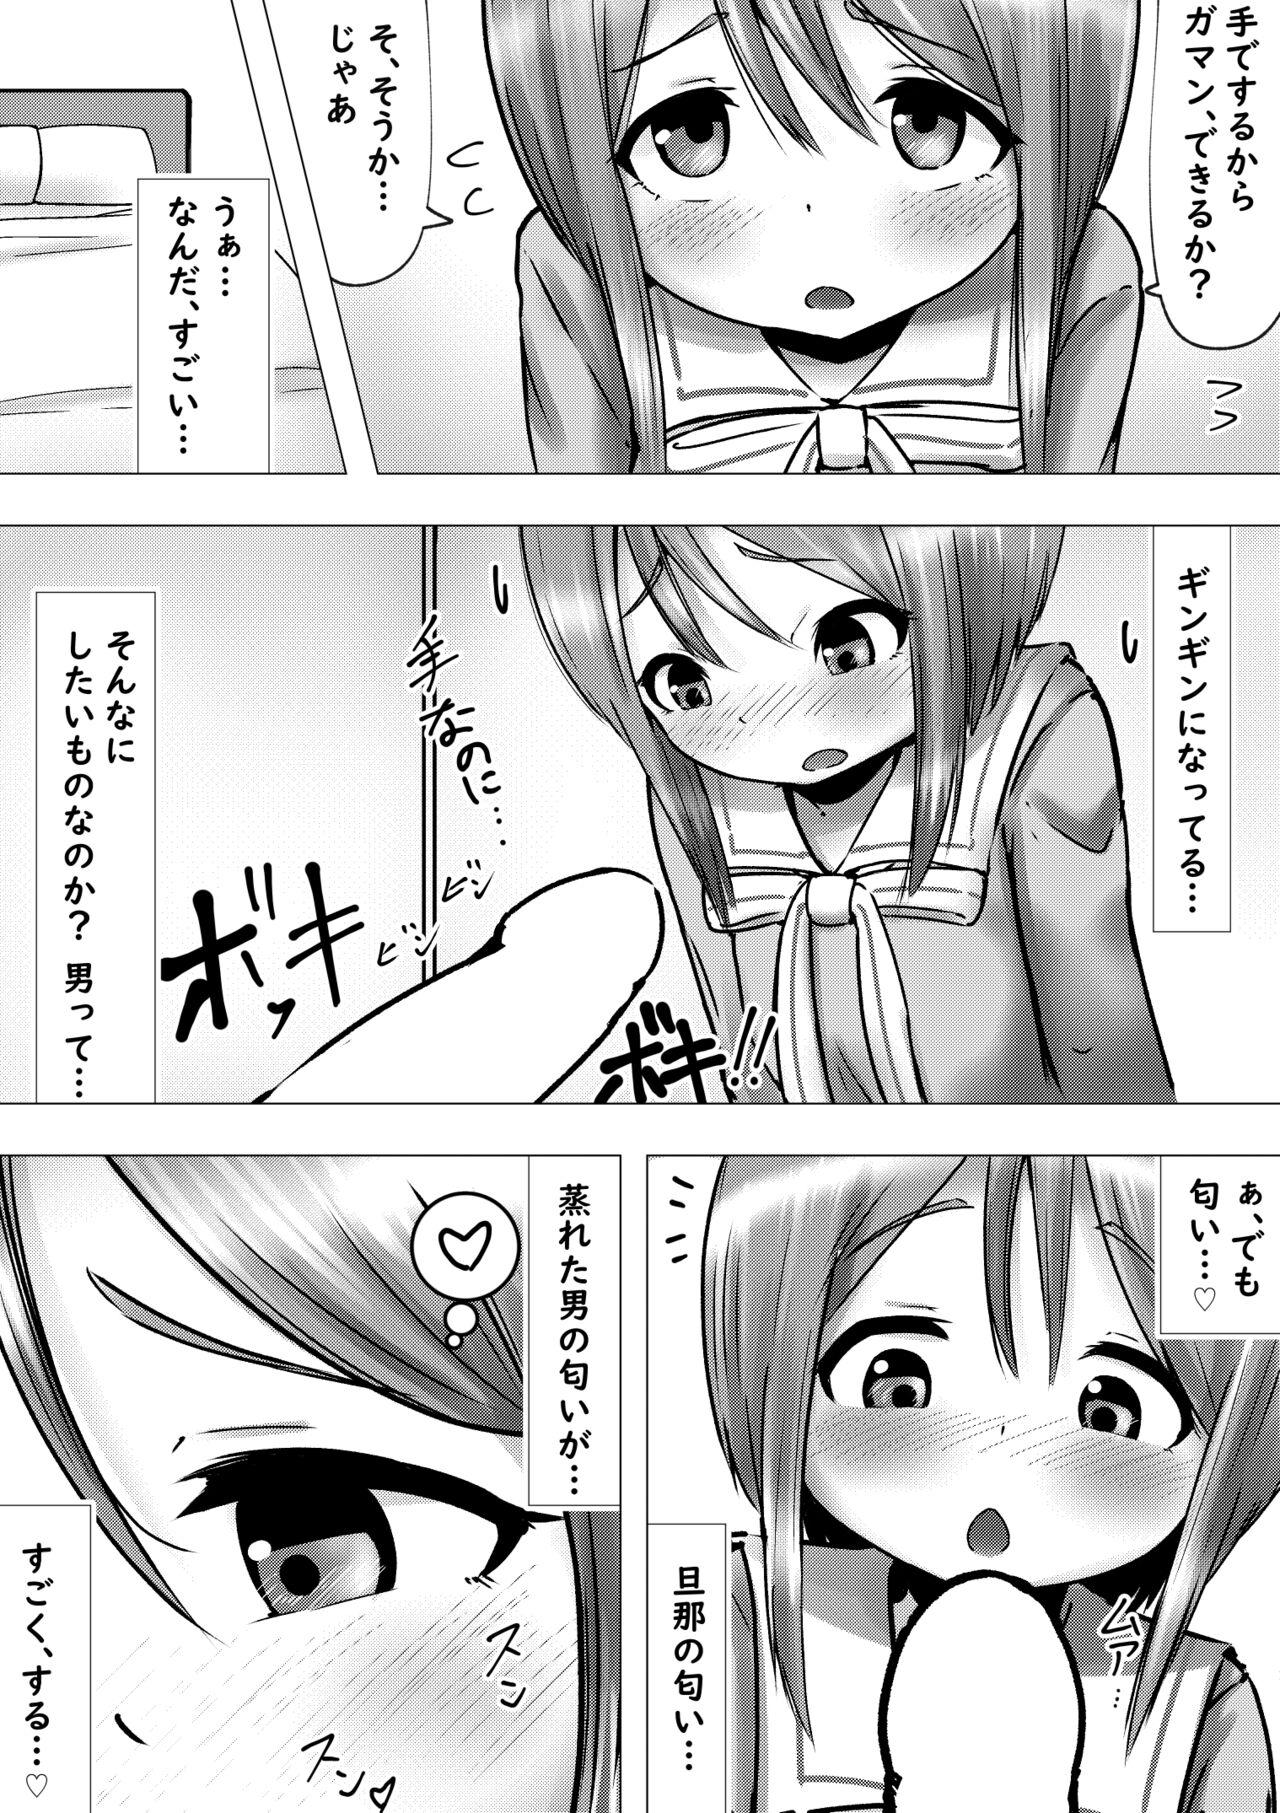 Tiny Girl Ano Hi na Ple Yome-san to Soredemo Ecchiku Sugoshitai Hanashi - Gundam zz Friend - Page 4